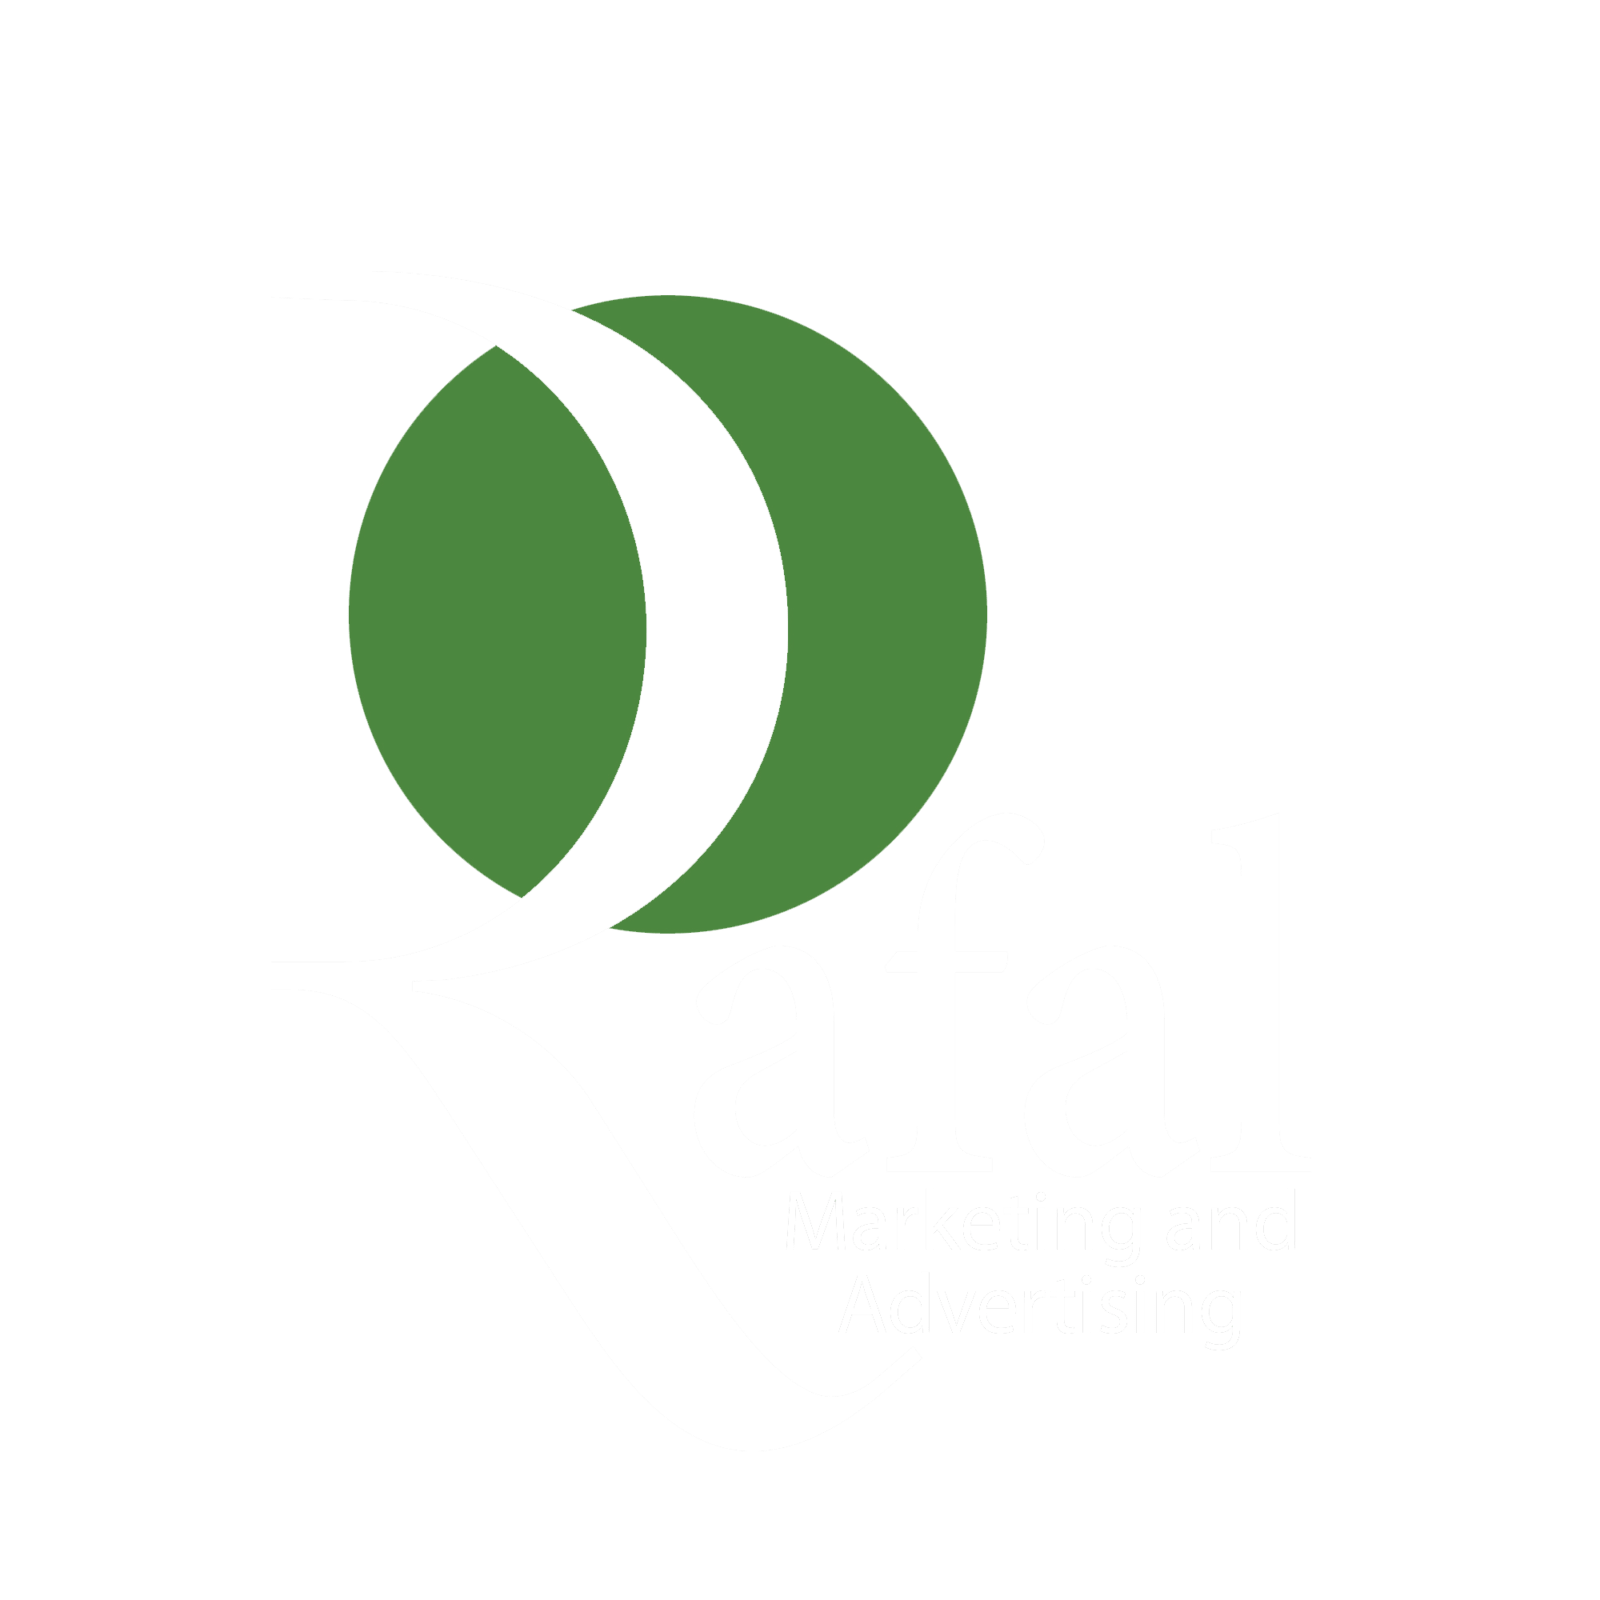 Rafal Advertising